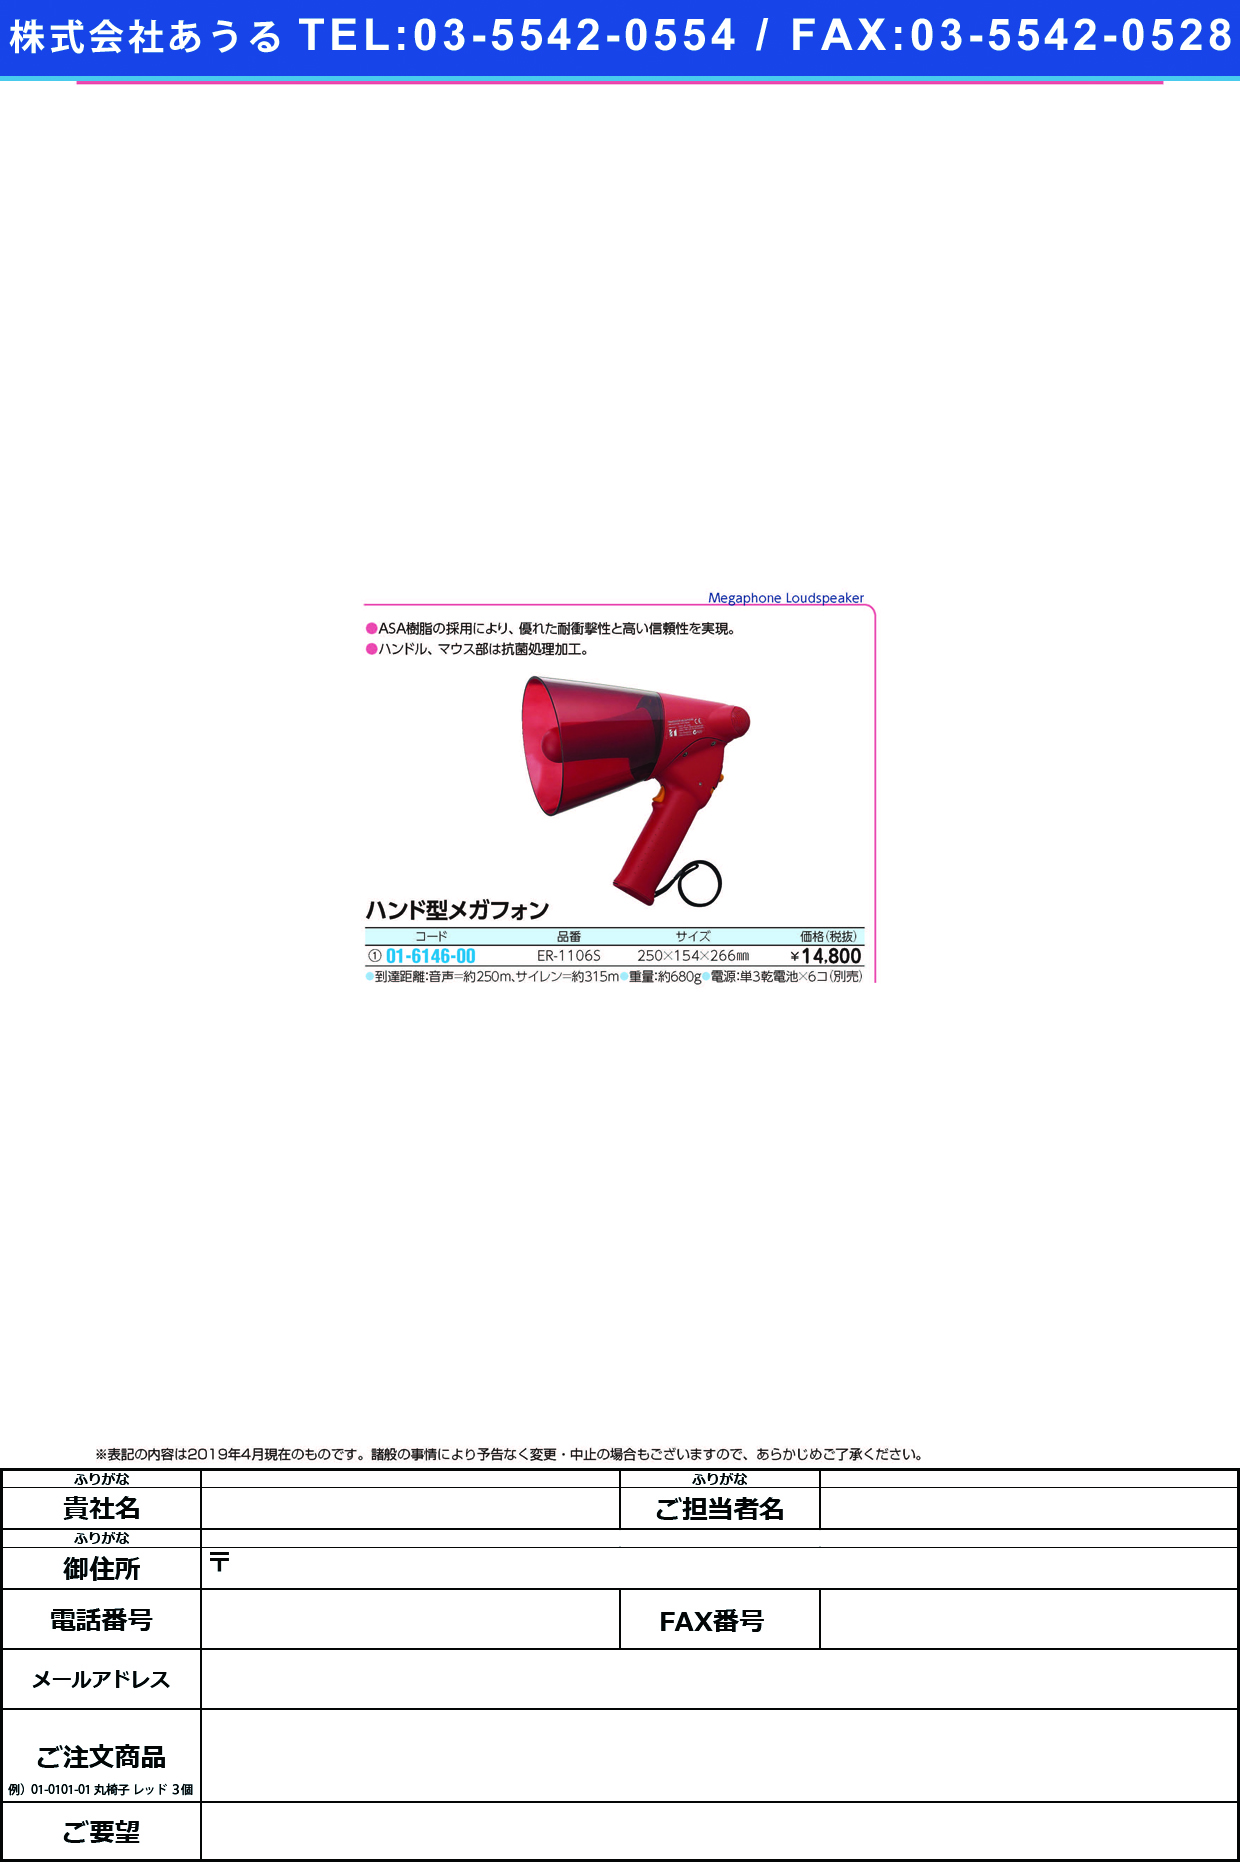 (01-6146-00)ハンド型メガフォン（赤） ER-1106S(ｻｲﾚﾝﾂｷ) ﾊﾝﾄﾞｶﾞﾀﾒｶﾞﾌｫﾝ【1台単位】【2019年カタログ商品】